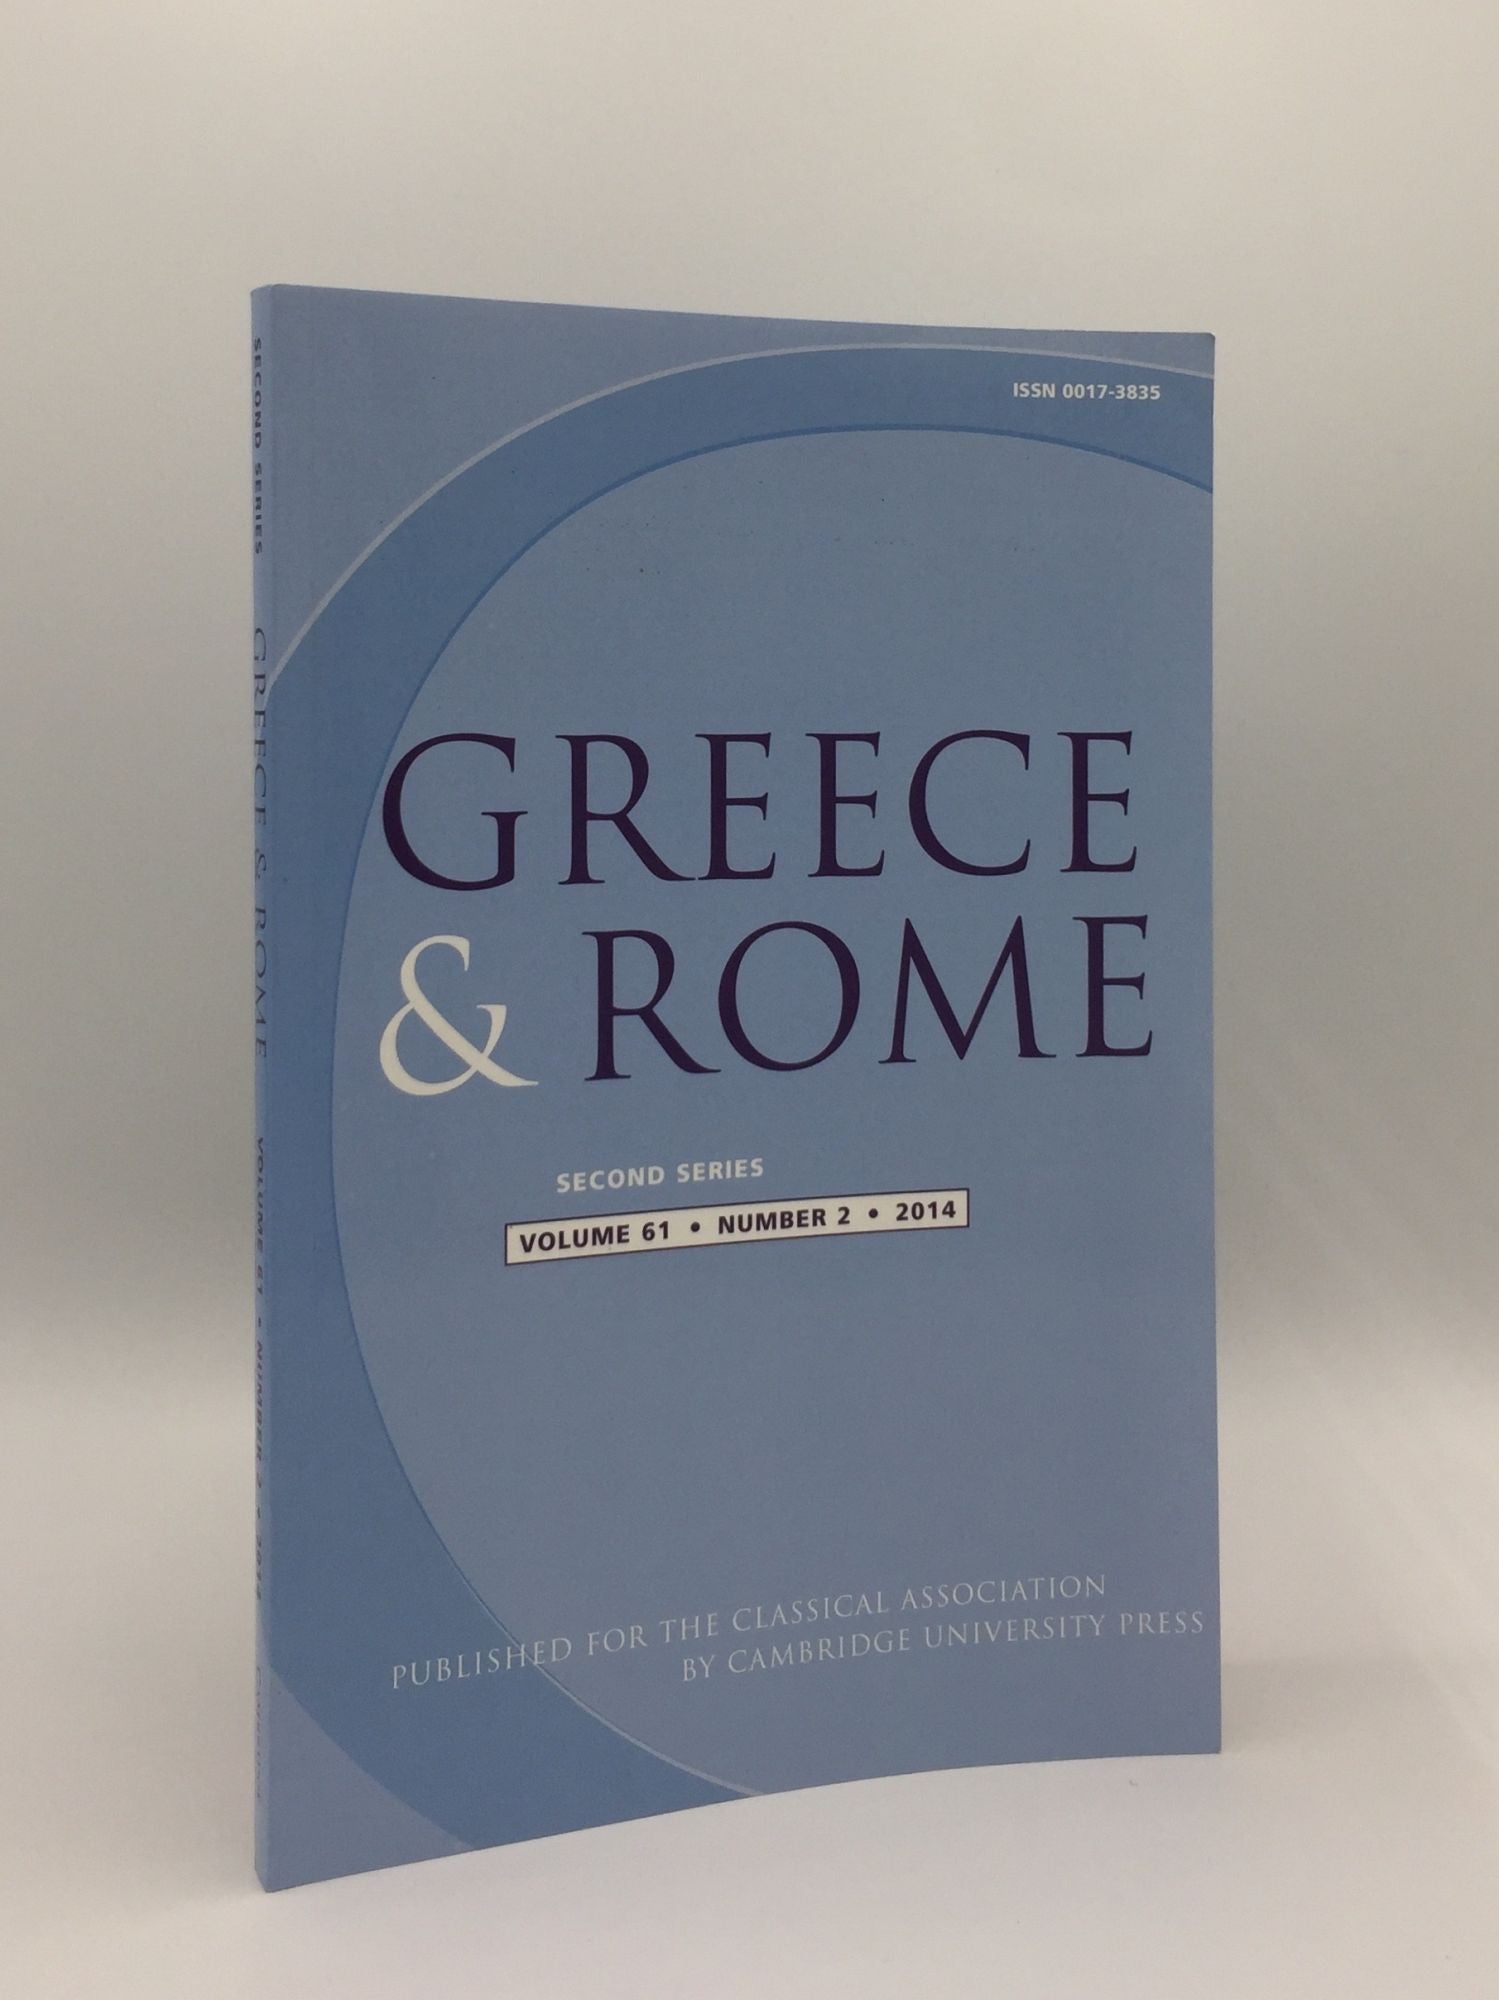 TAYLOR J., IZZET V., SHORROCK R. - Greece & Rome Second Series October 2014 Vol. 60 No. 2